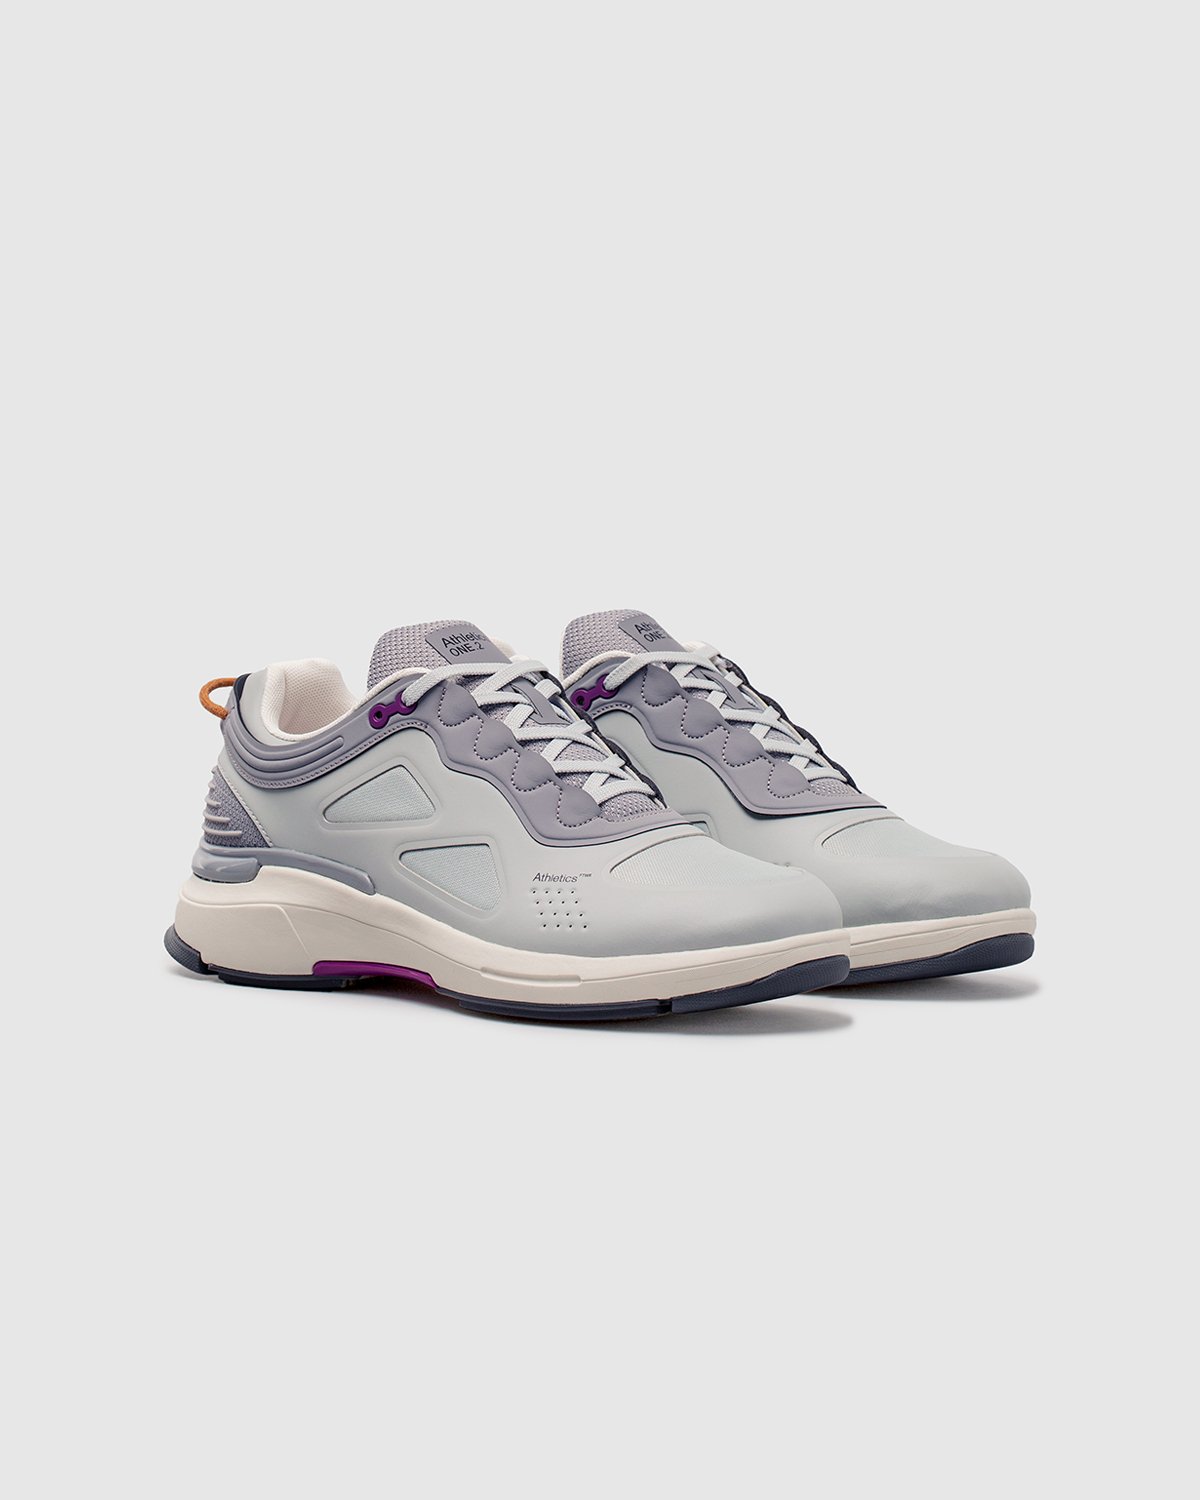 Athletics Footwear - ONE.2 Grey / Formal Grey / G3 Grape - Footwear - Grey - Image 2